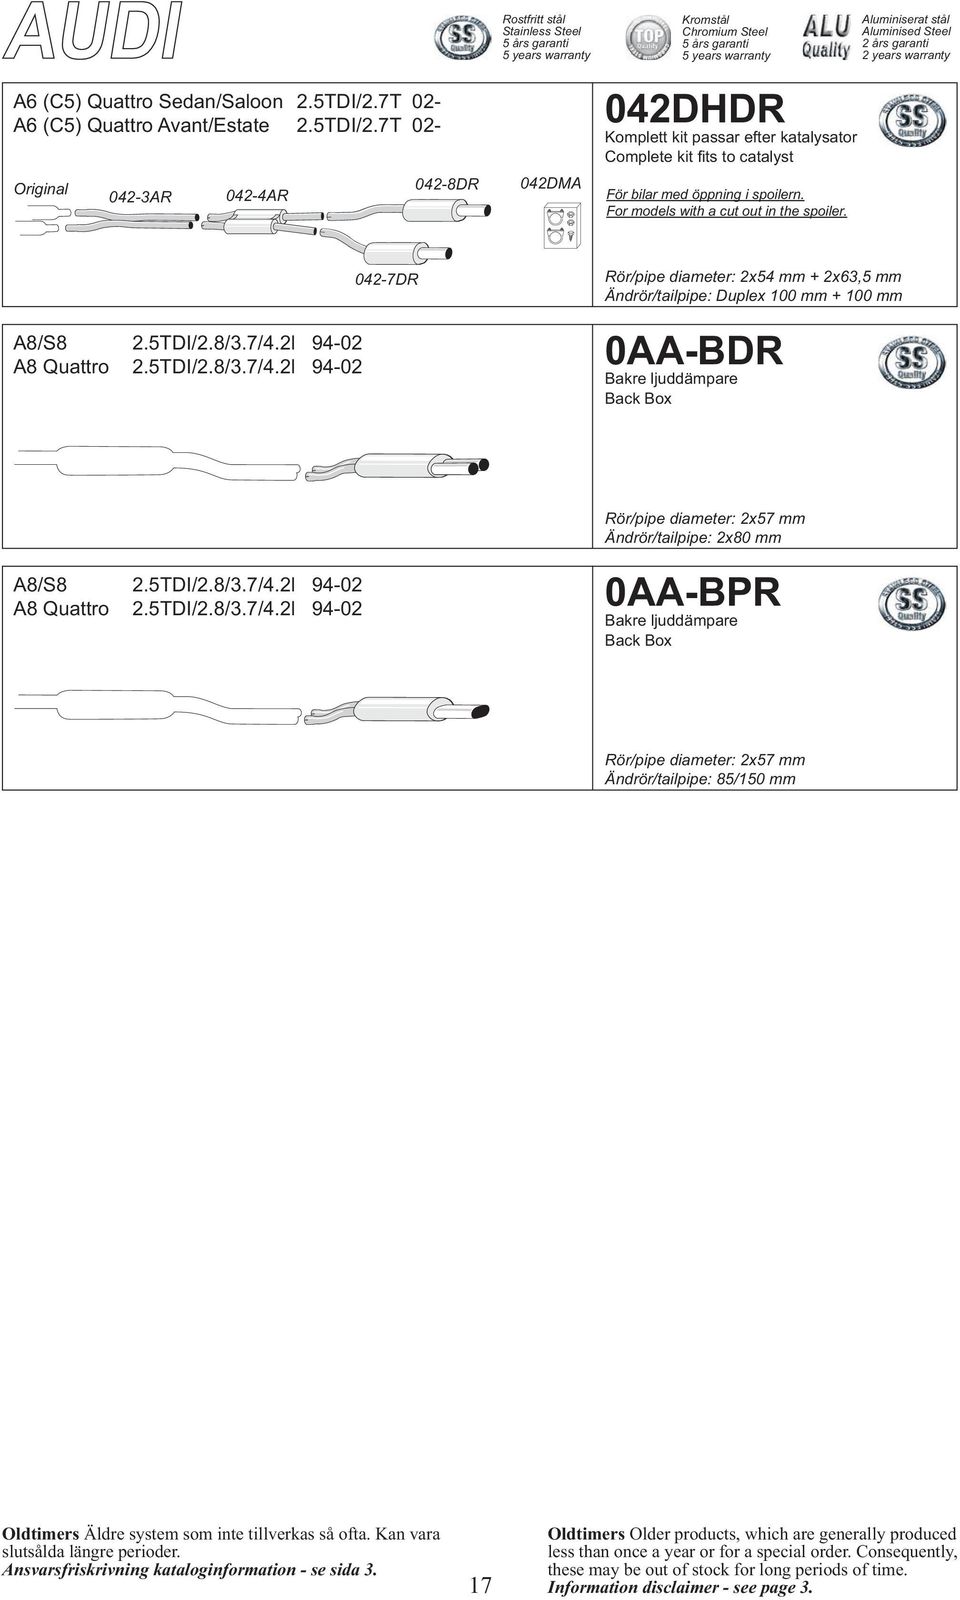 5TDI/2.8/3.7/4.2l 94-02 A8 Quattro 2.5TDI/2.8/3.7/4.2l 94-02 0AA-BDR Back Box Rör/pipe diameter: 2x57 mm A8/S8 2.5TDI/2.8/3.7/4.2l 94-02 A8 Quattro 2.5TDI/2.8/3.7/4.2l 94-02 0AA-BPR Back Box Rör/pipe diameter: 2x57 mm Ändrör/tailpipe: 85/150 mm 17